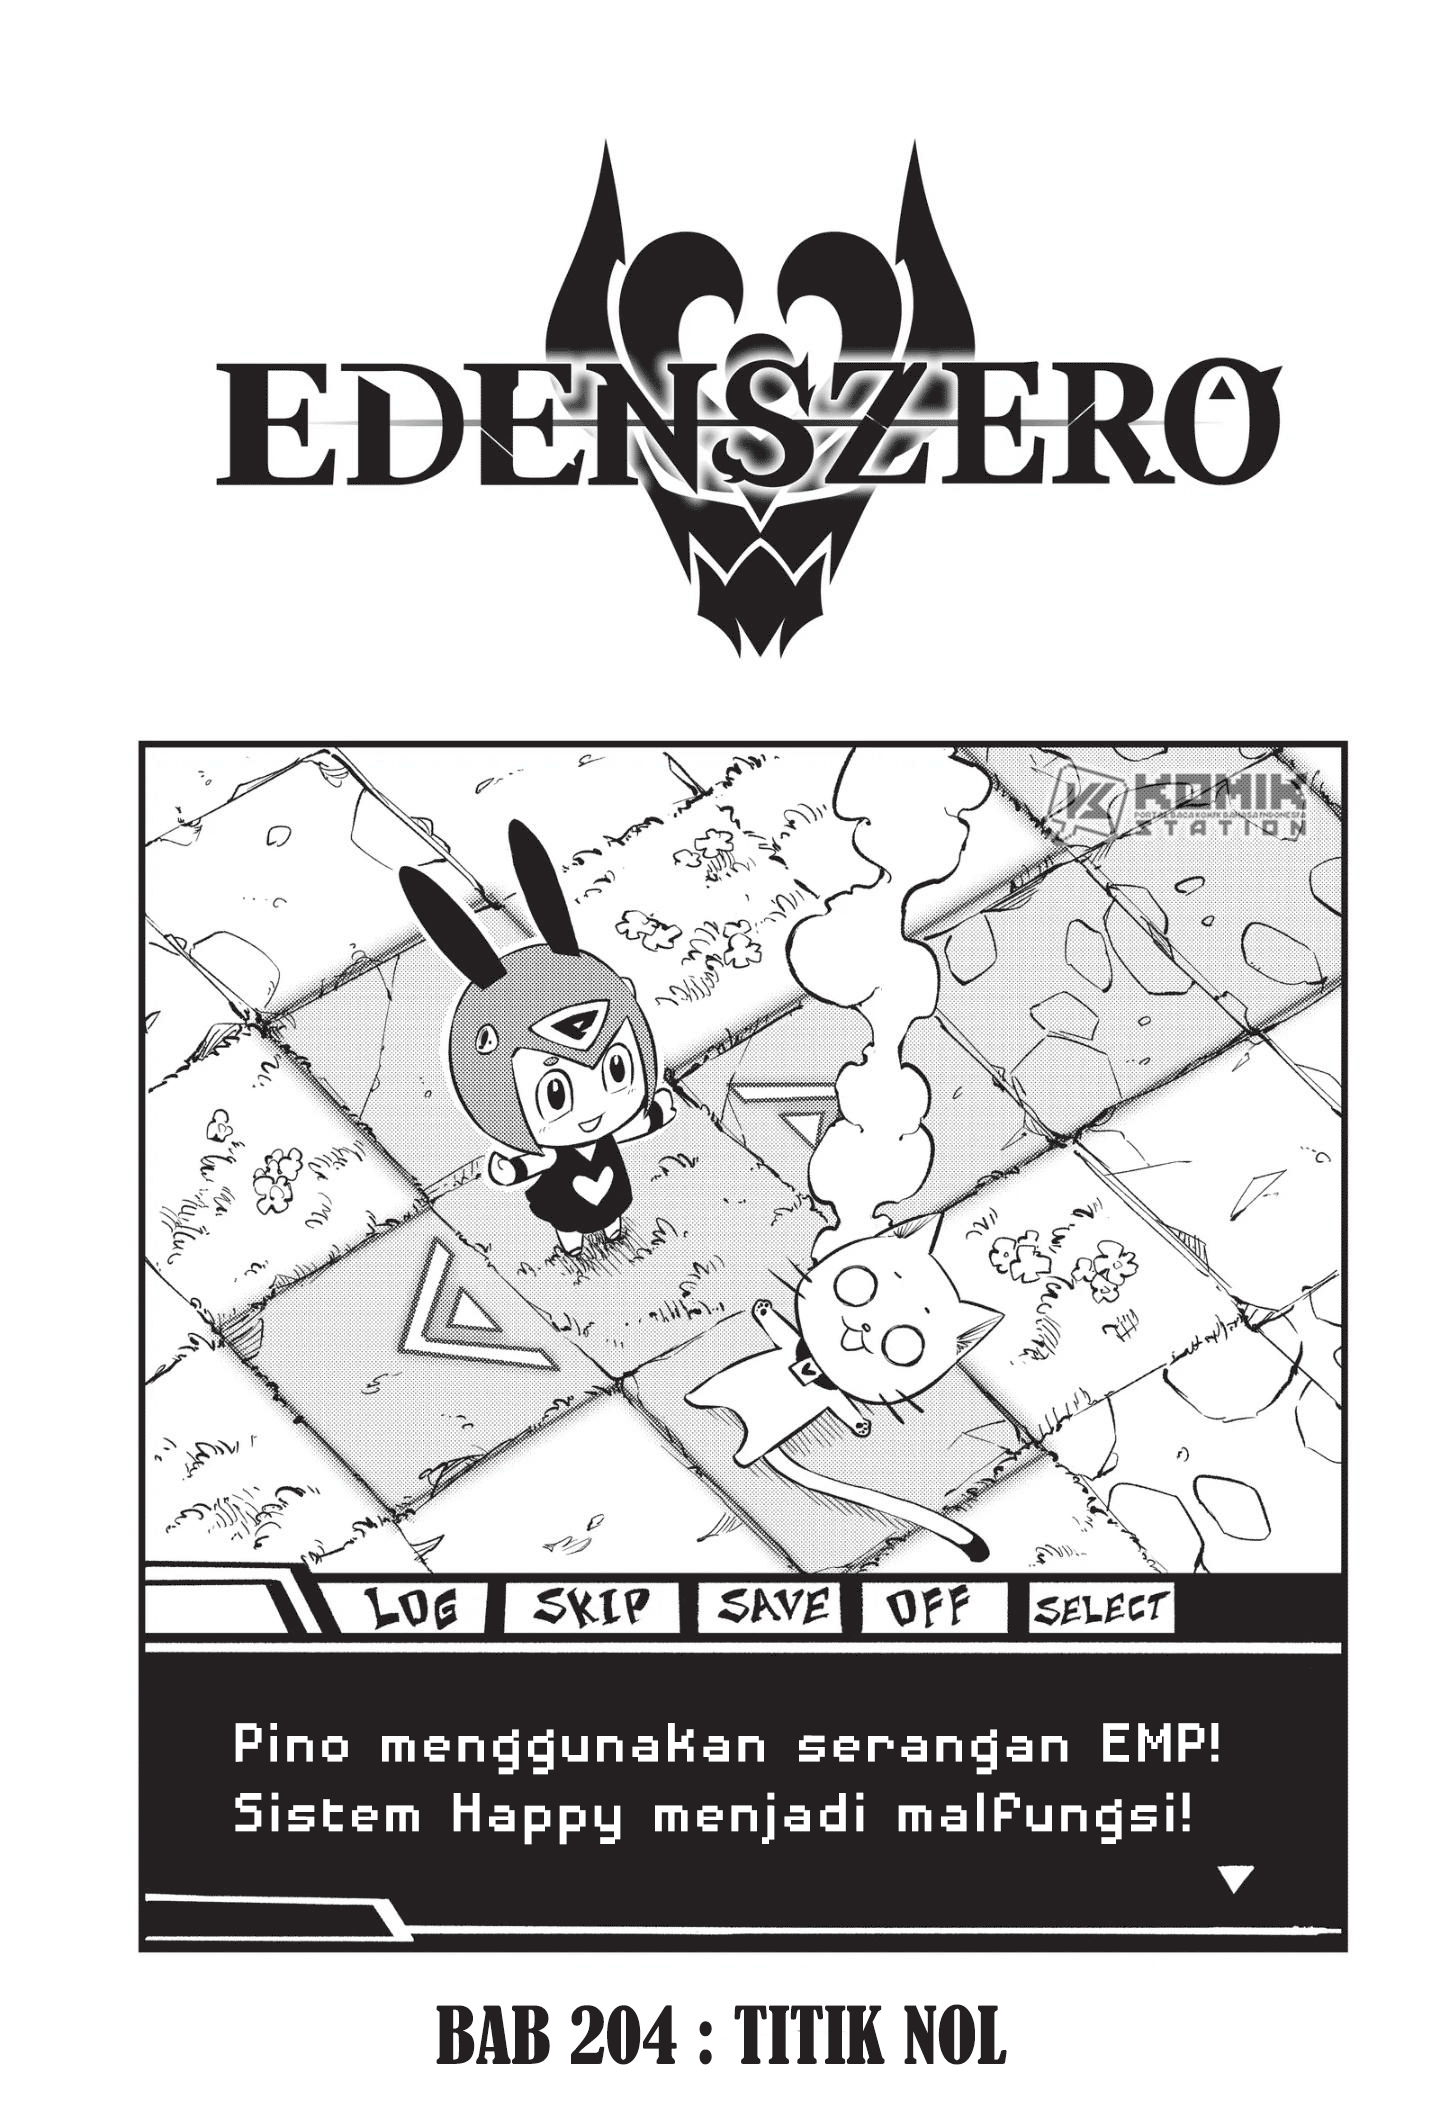 Eden’s Zero Chapter 204